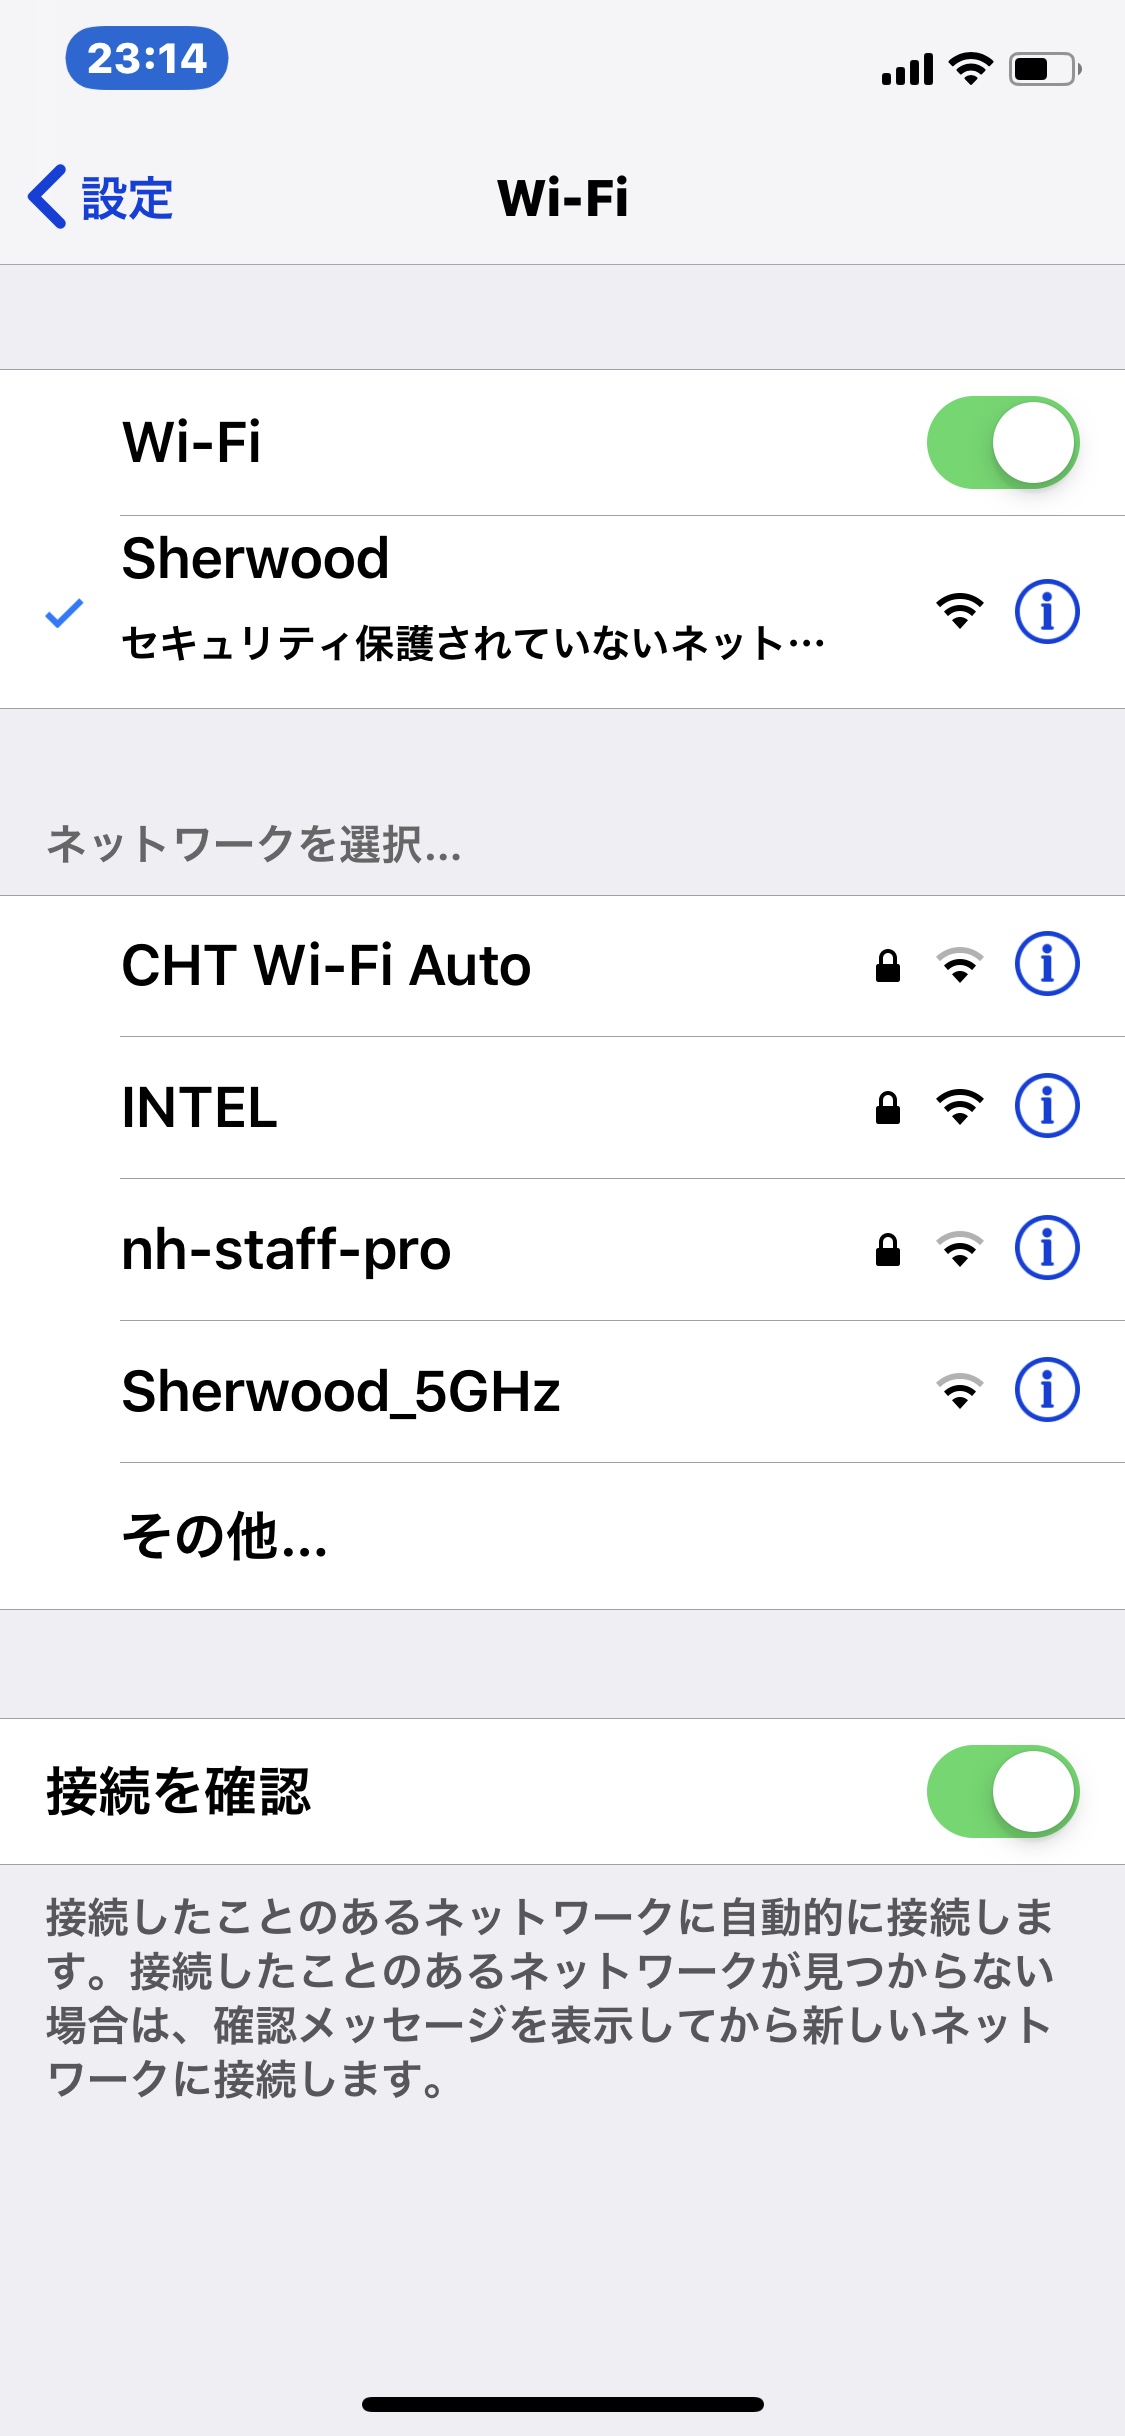 ホテルの無料Wi-Fi